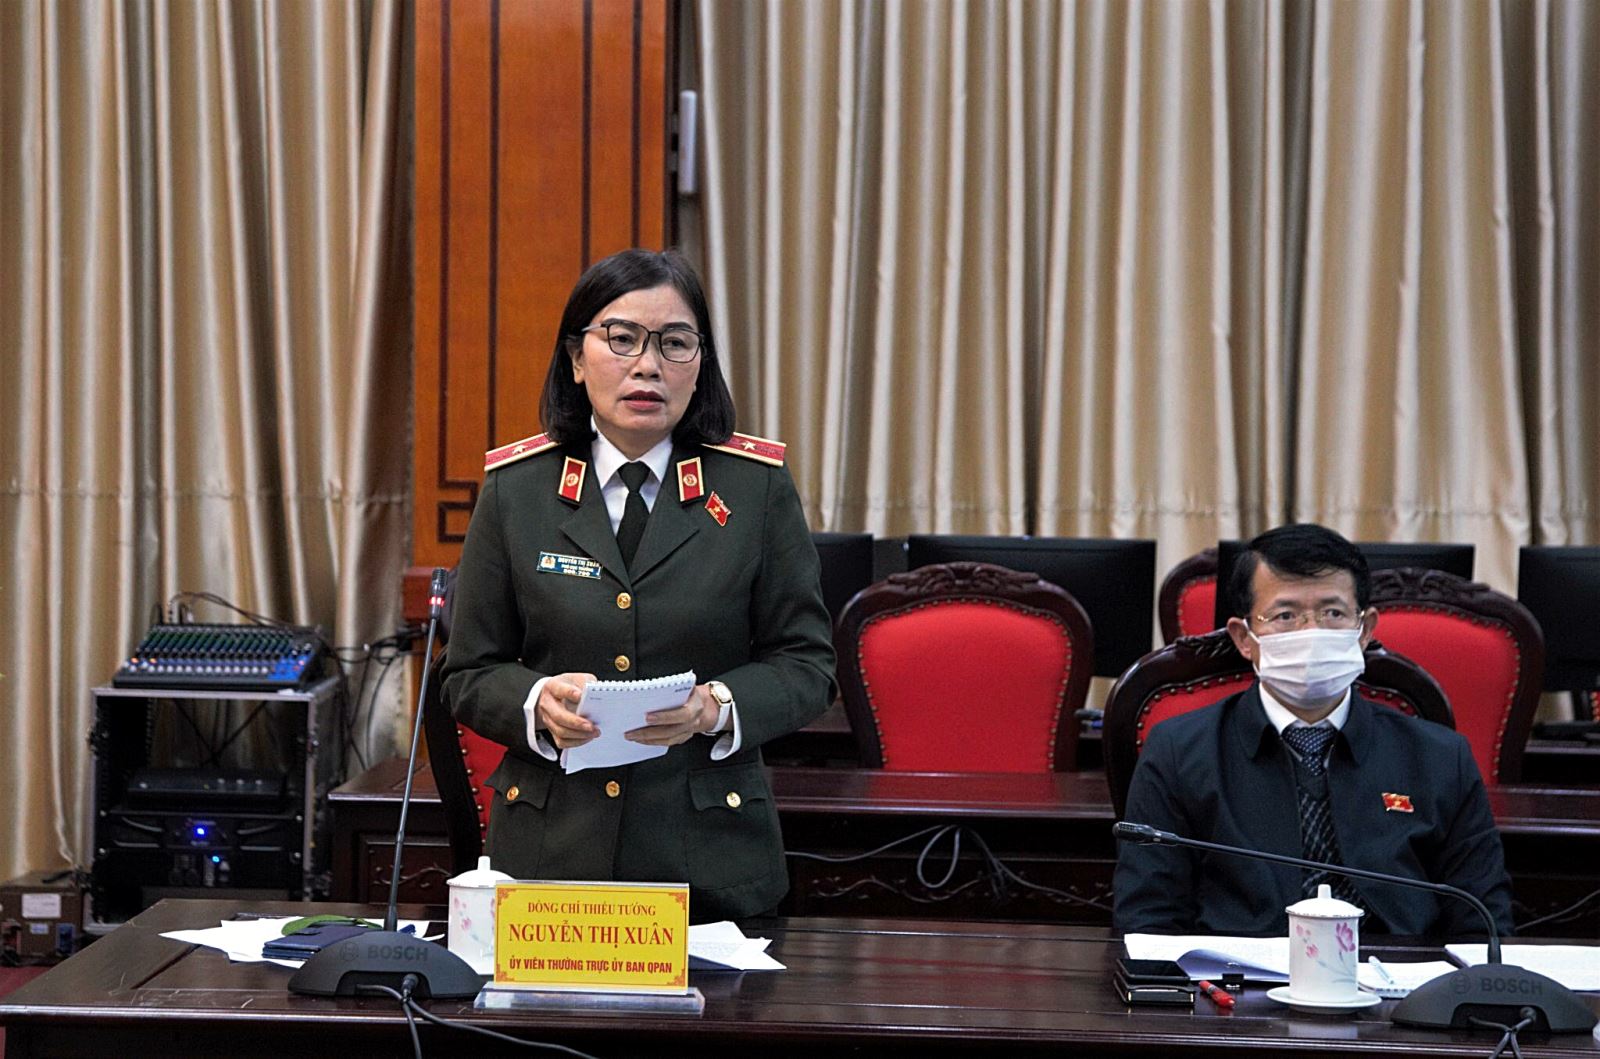 Ủy viên Thường trực Ủy ban Quốc phòng và An ninh, Thiếu tướng Nguyễn Thị Xuân tham gia ý kiến về quyền hạn, trách nhiệm của lực lượng CSCĐ